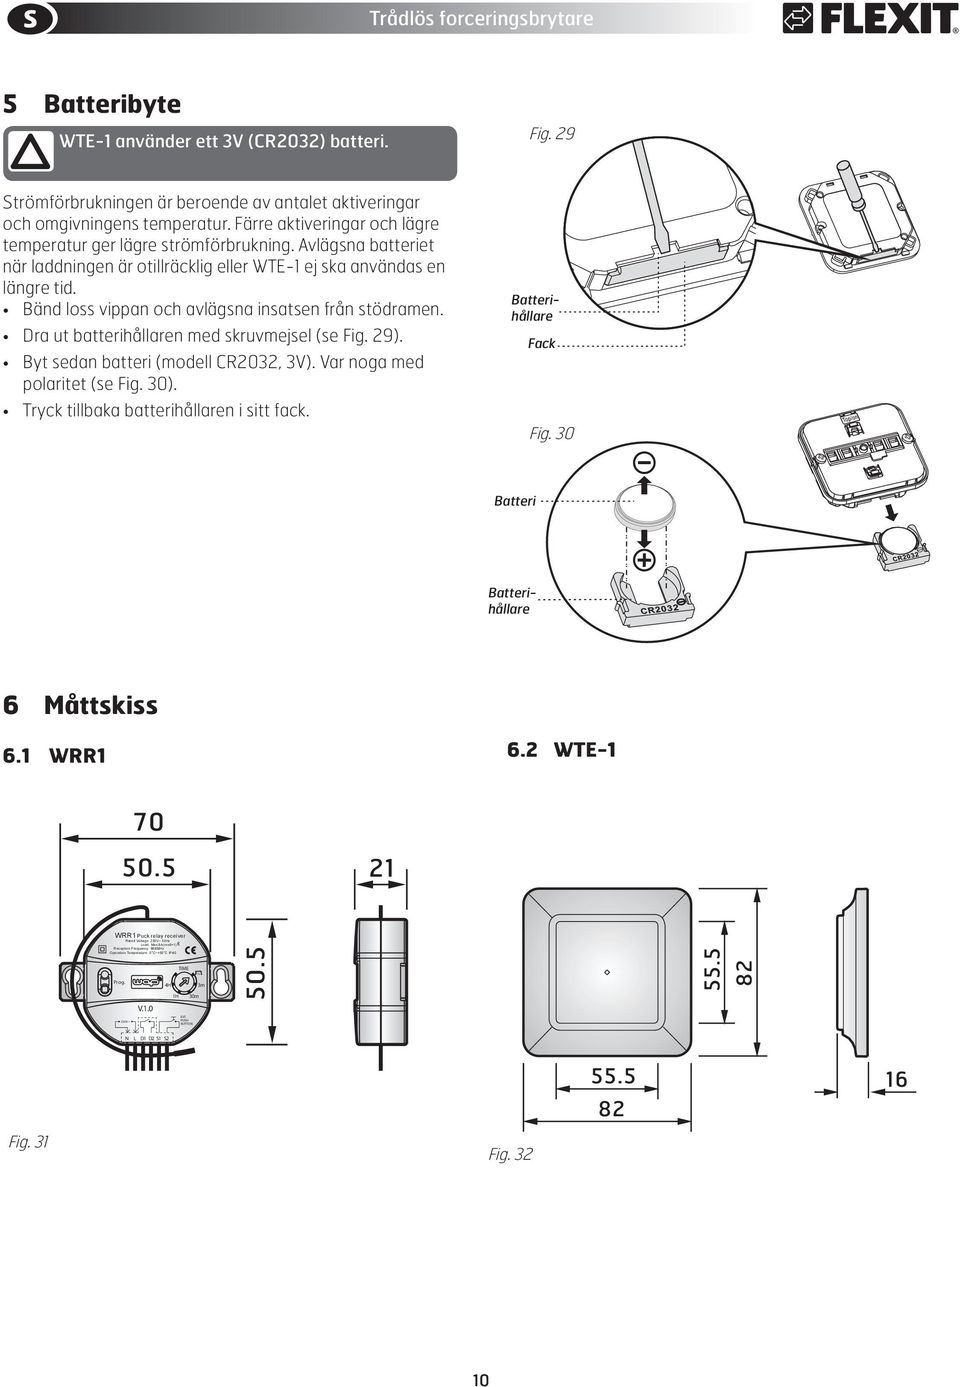 Bänd loss vippan och avlägsna insatsen från stödramen. Dra ut batterihållaren med skruvmejsel (se Fig. 29). Byt sedan batteri (modell CR2032, 3V). Var noga med polaritet (se Fig. 30).